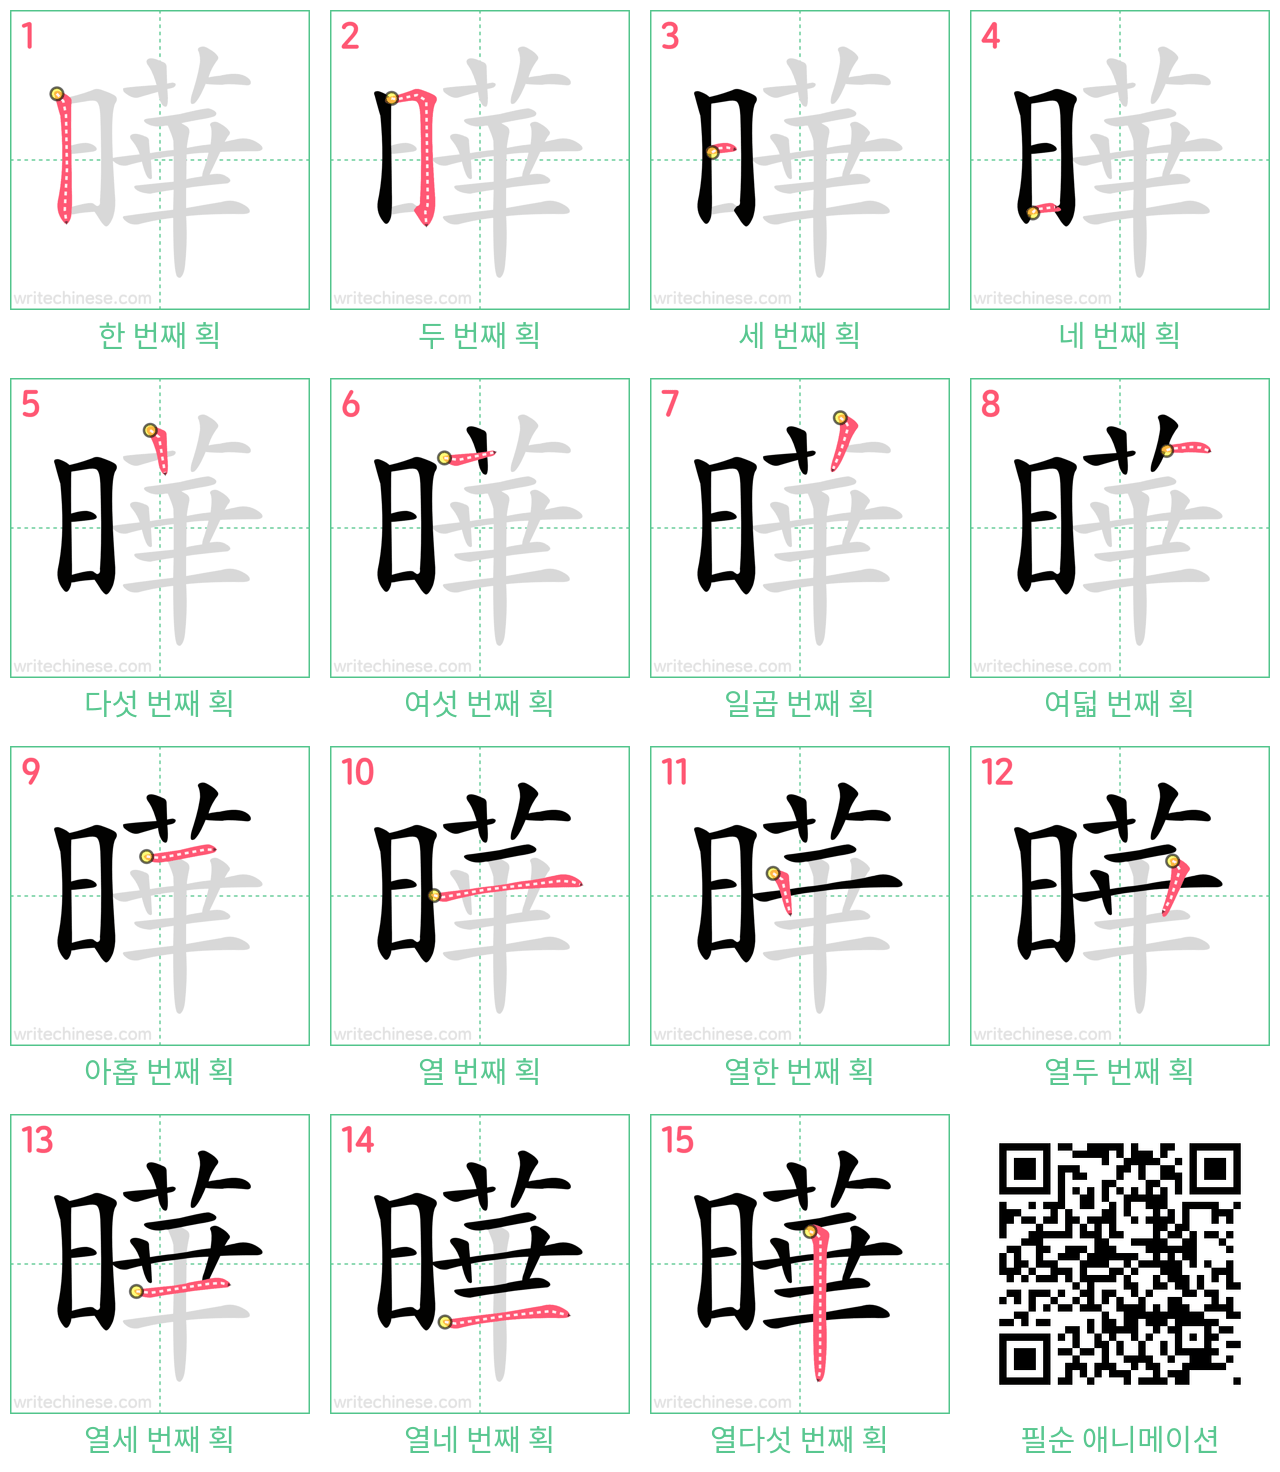 曄 step-by-step stroke order diagrams